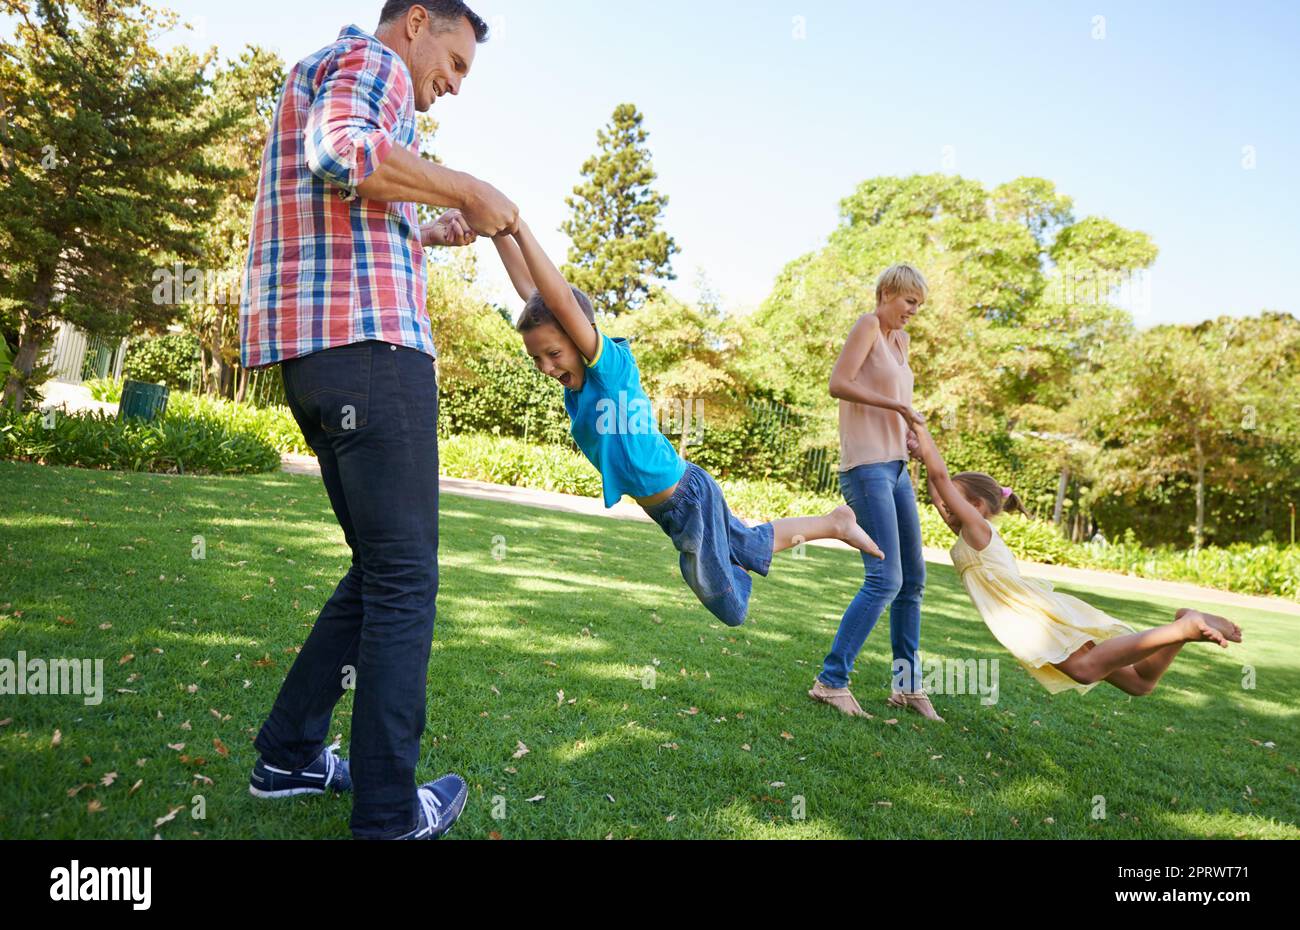 Wer braucht einen Spielplatz, wenn man mom und Dad um sich hat? Zwei Eltern schwingen ihre kleinen Kinder herum, während sie an einem wunderschönen sonnigen Tag im Park spielen. Stockfoto